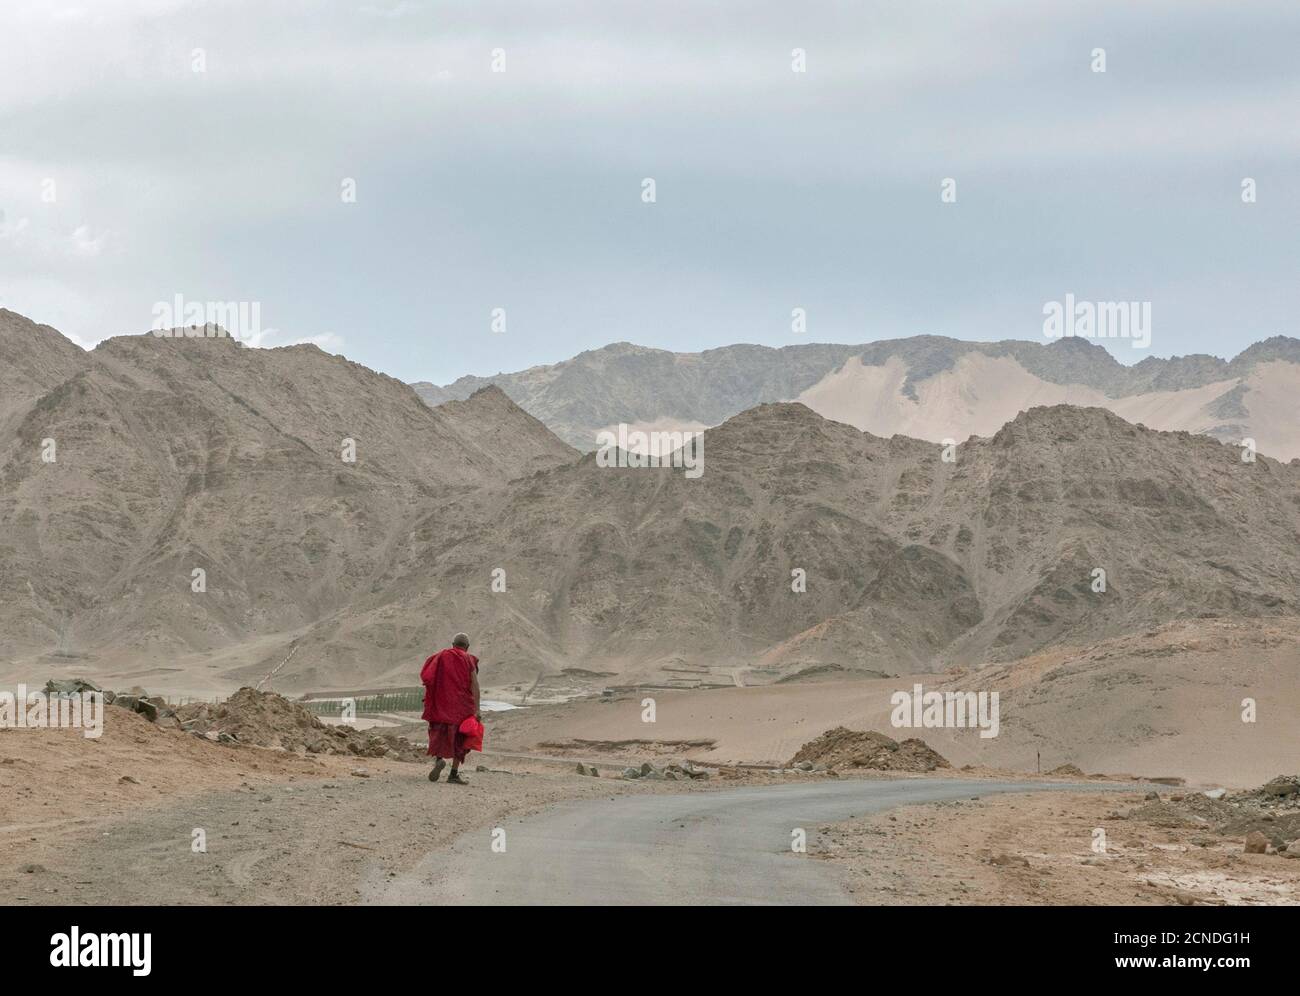 Monaco che cammina su strada con paesaggio di montagna, Ladakh, India Foto Stock